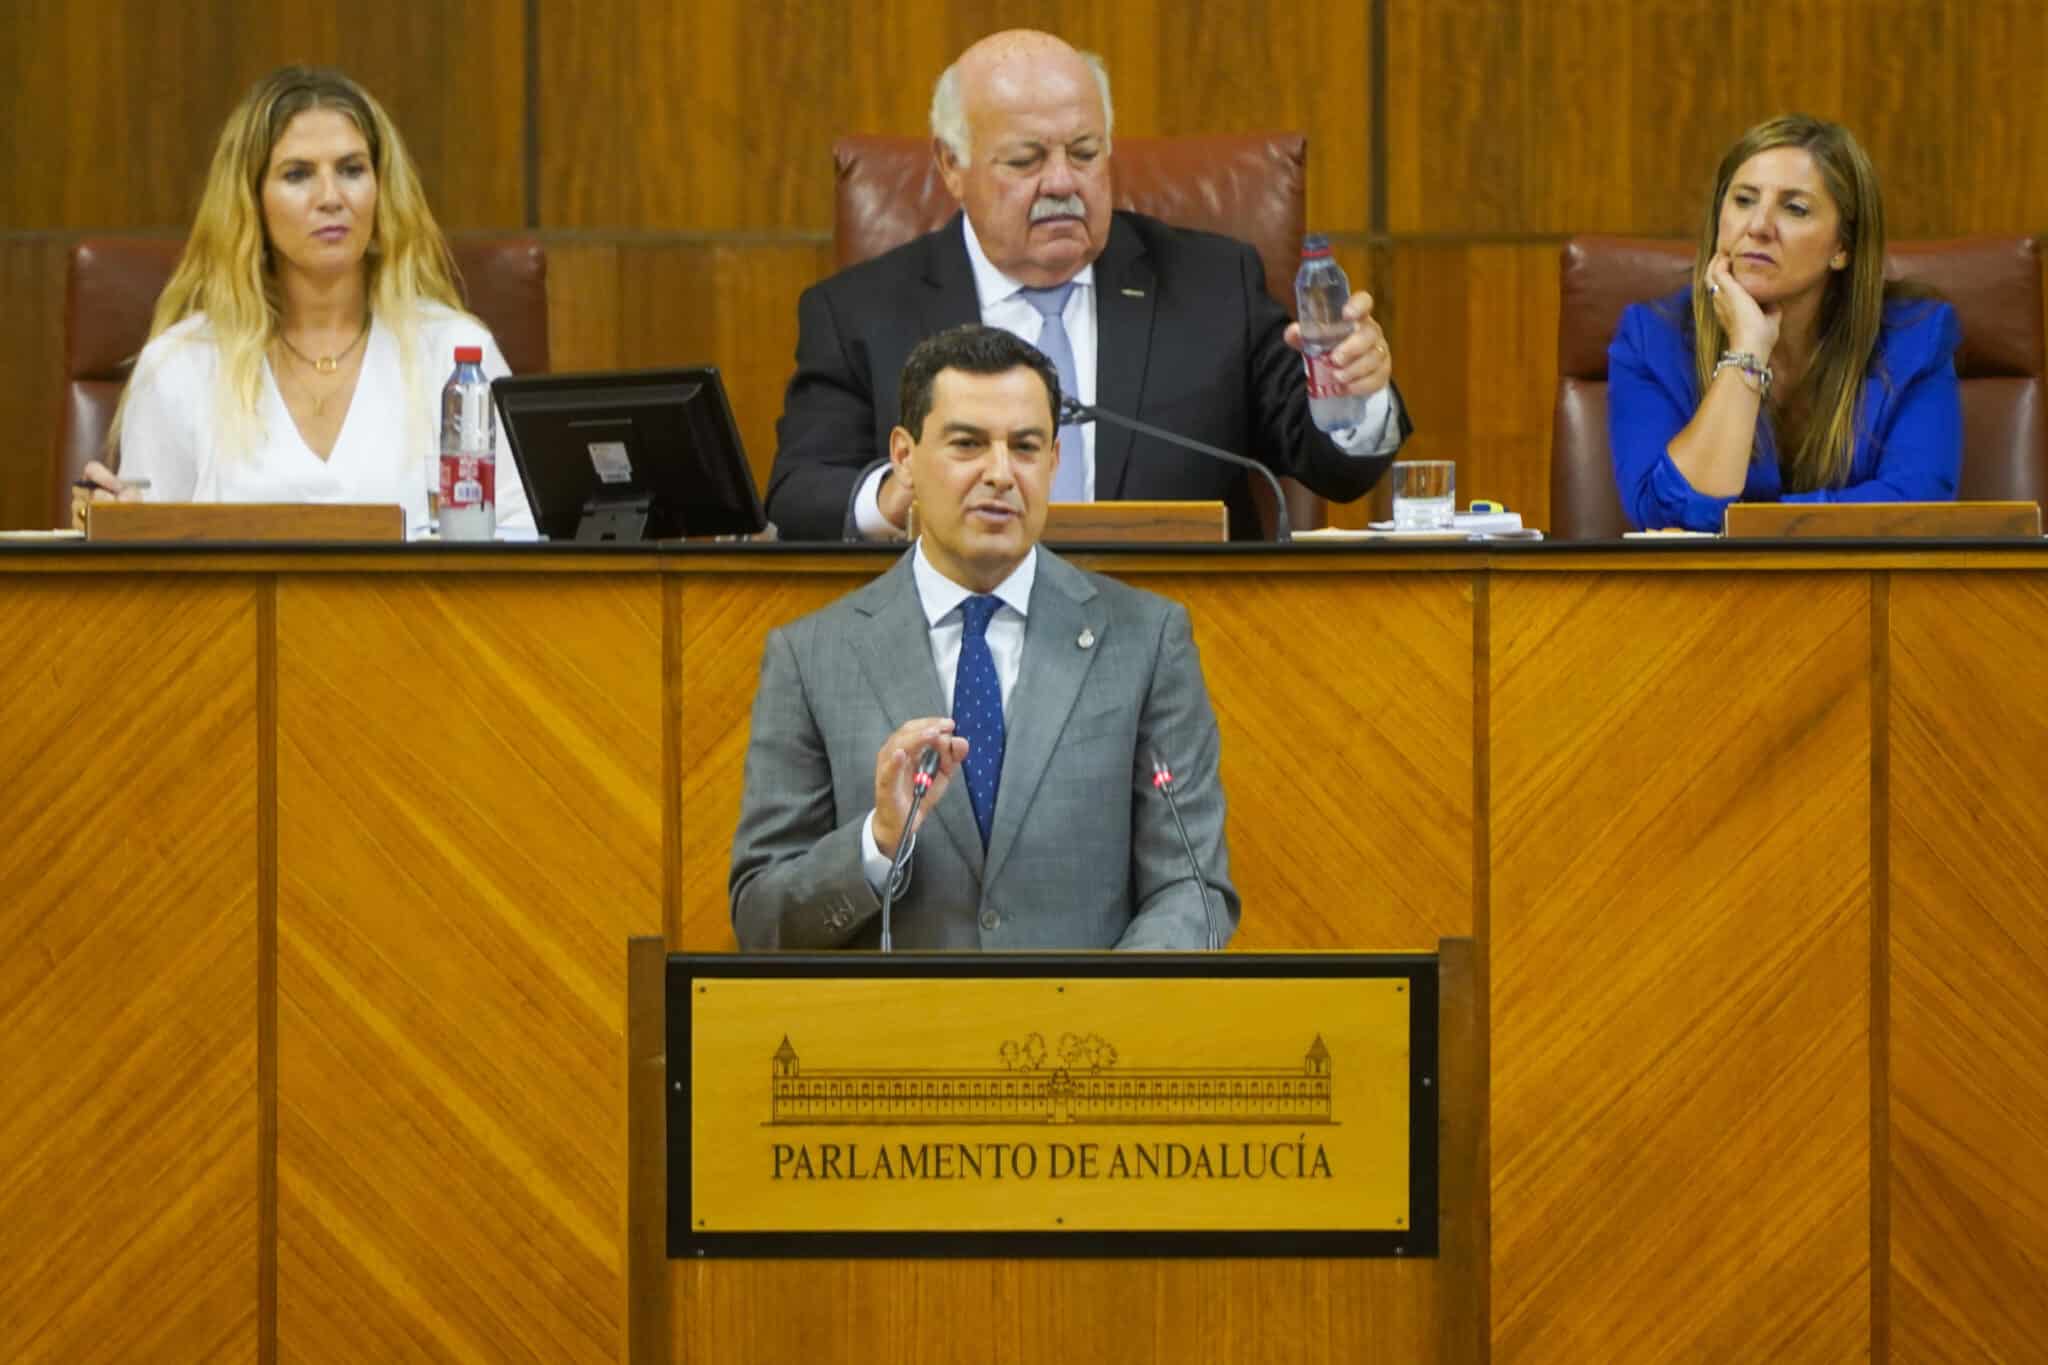 Primera jornada del debate de investidura del presidente de la Junta de Andalucía de la XII legislatura con la intervención del candidato del PP-A, Juanma Moreno.